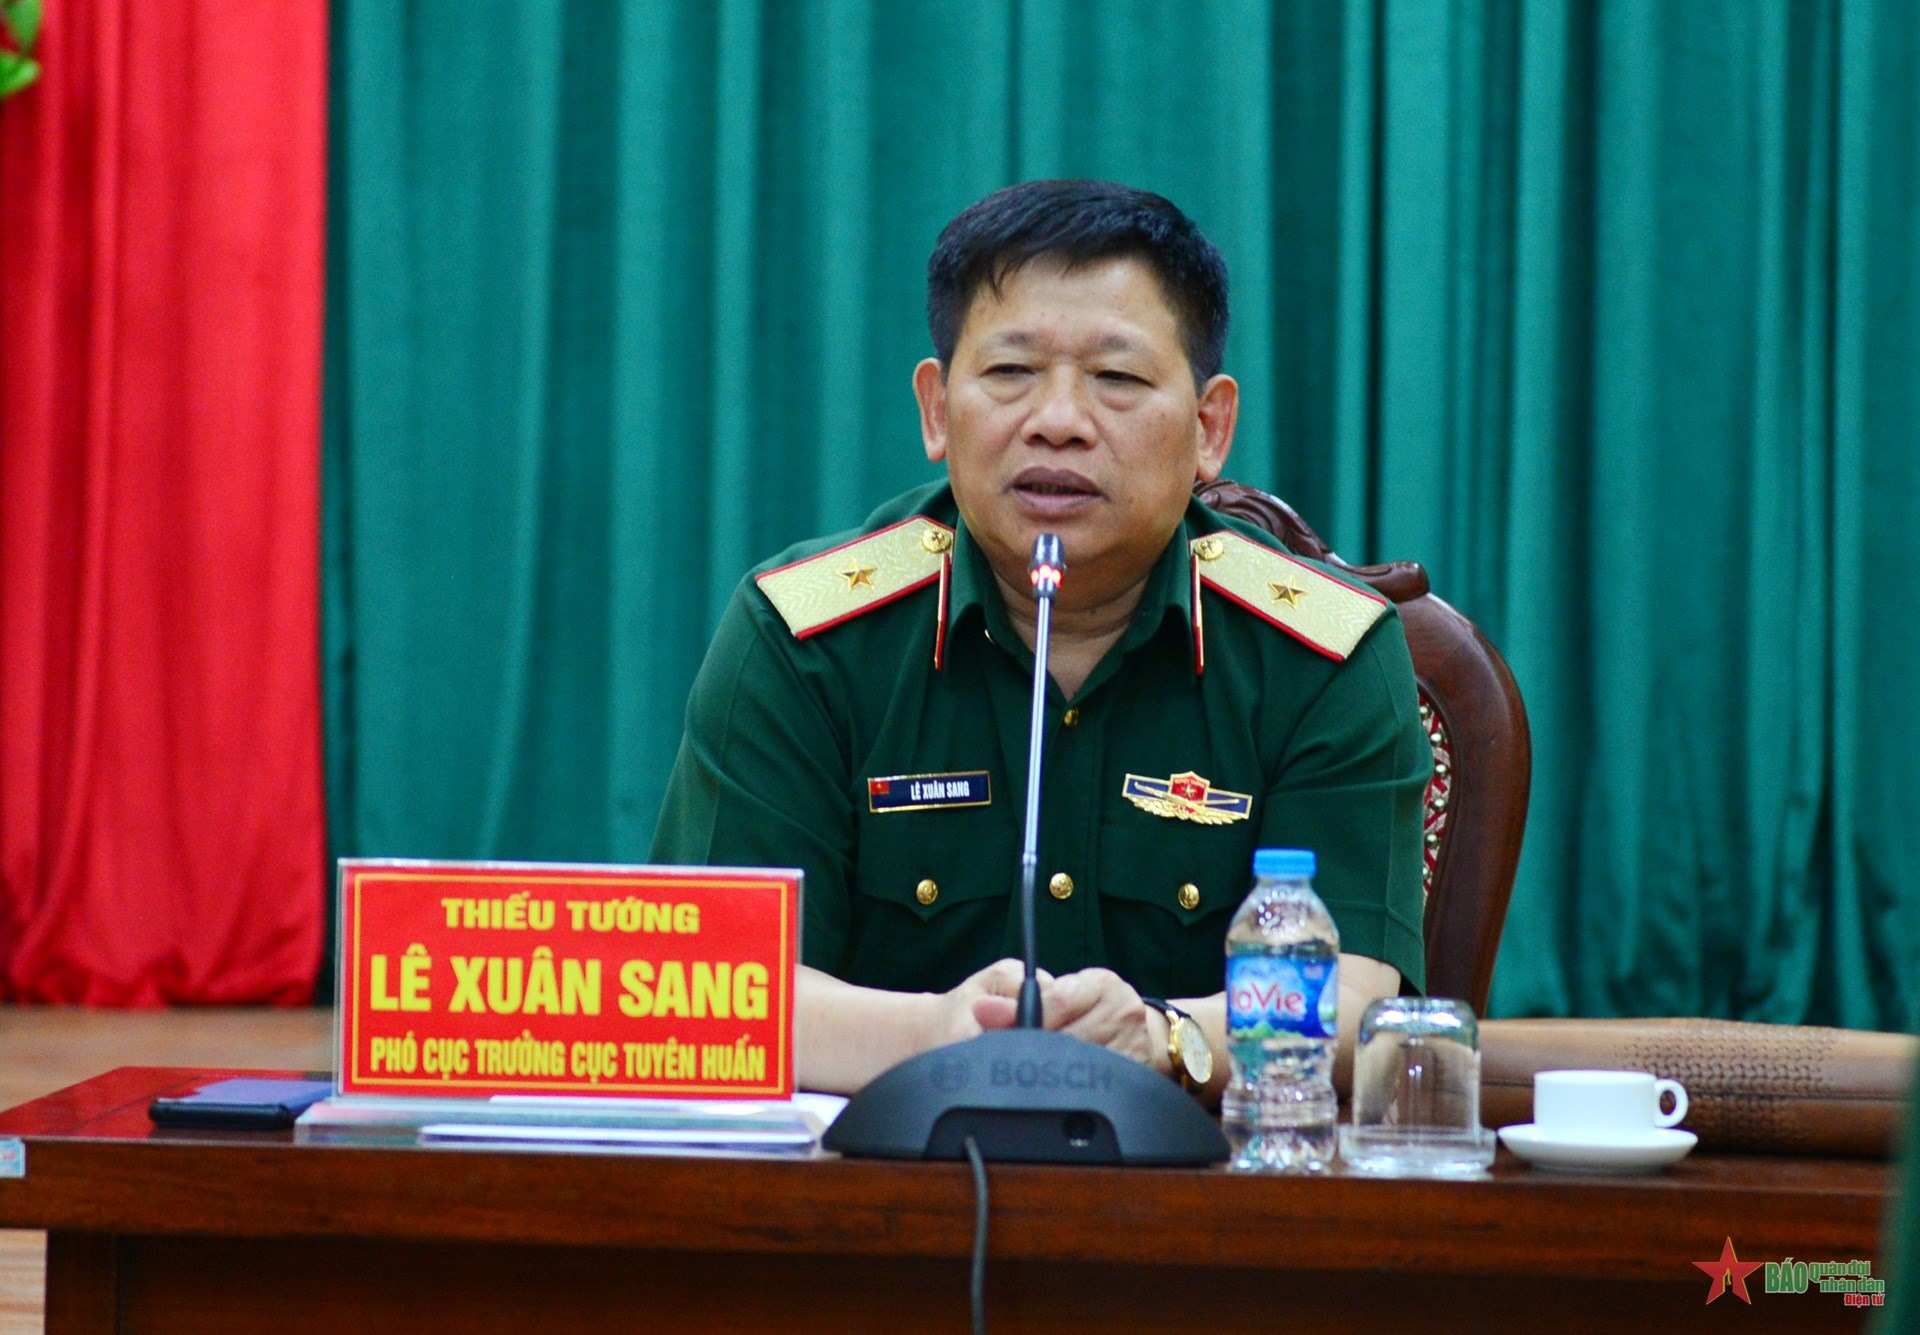 Thiếu tướng Lê Xuân Sang chủ trì cuộc họp.